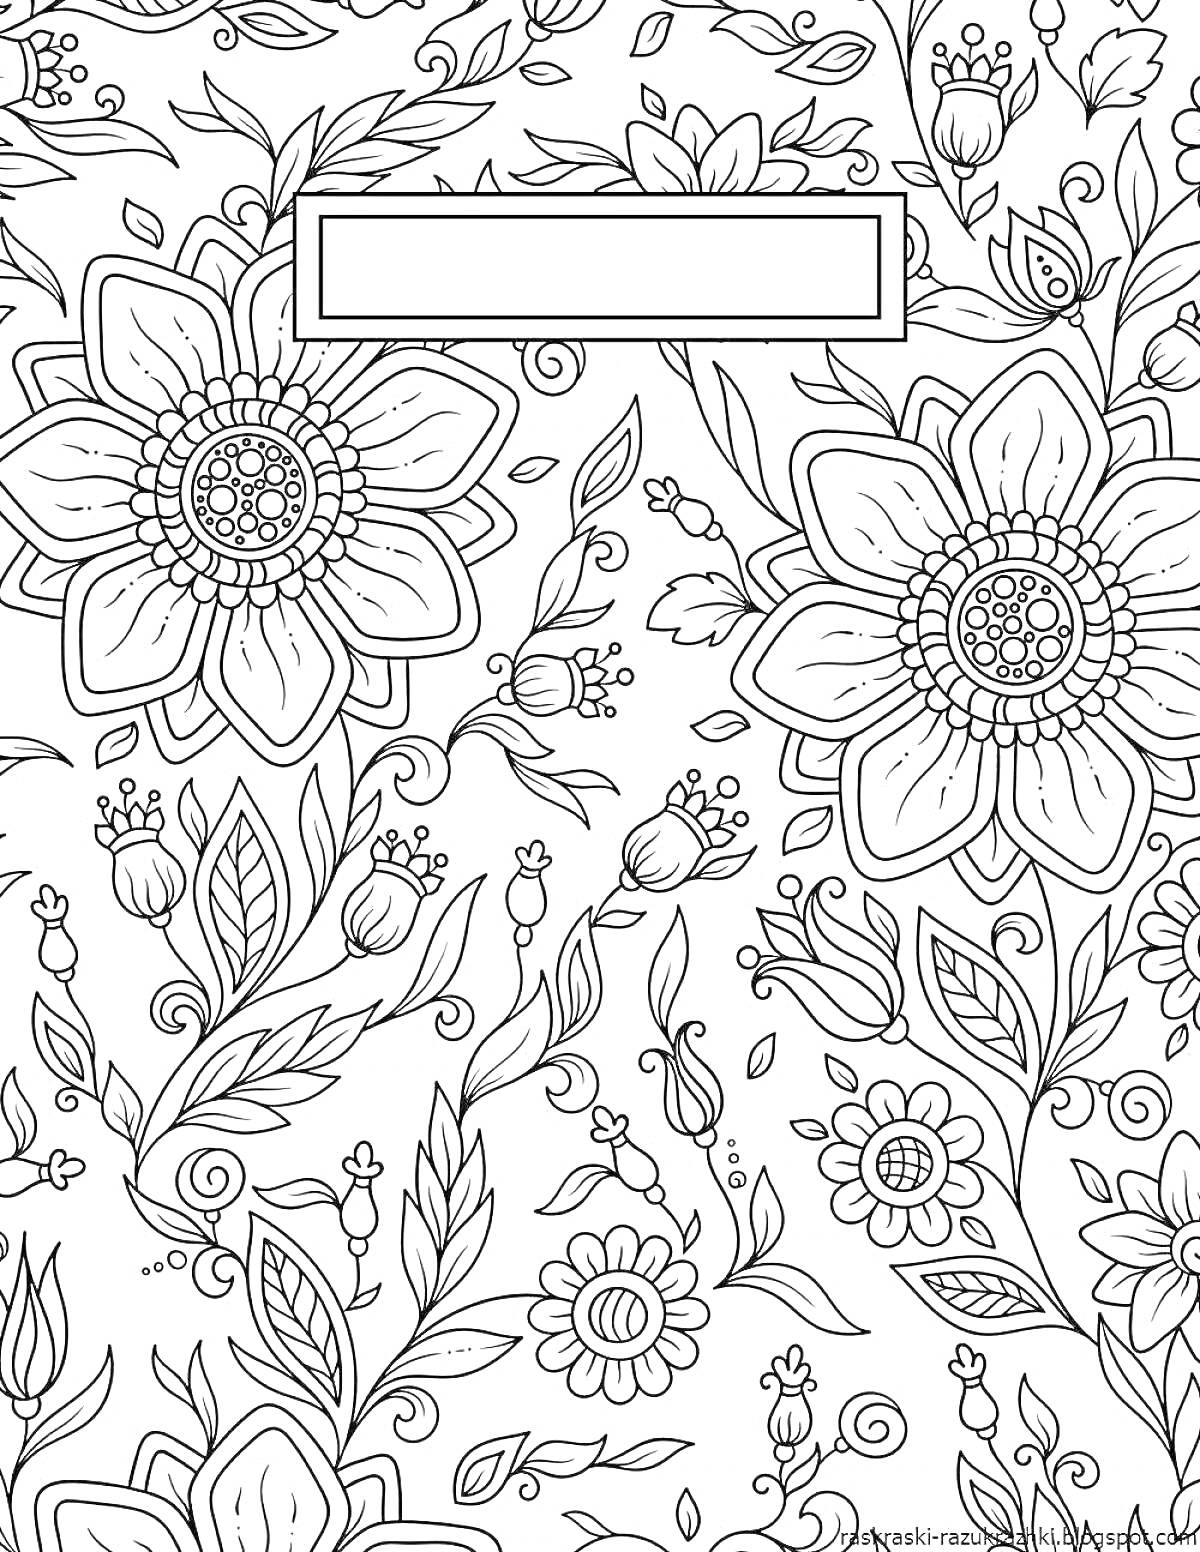 Раскраска обложка на тетрадь с крупными цветами, листьями и рамкой для подписи